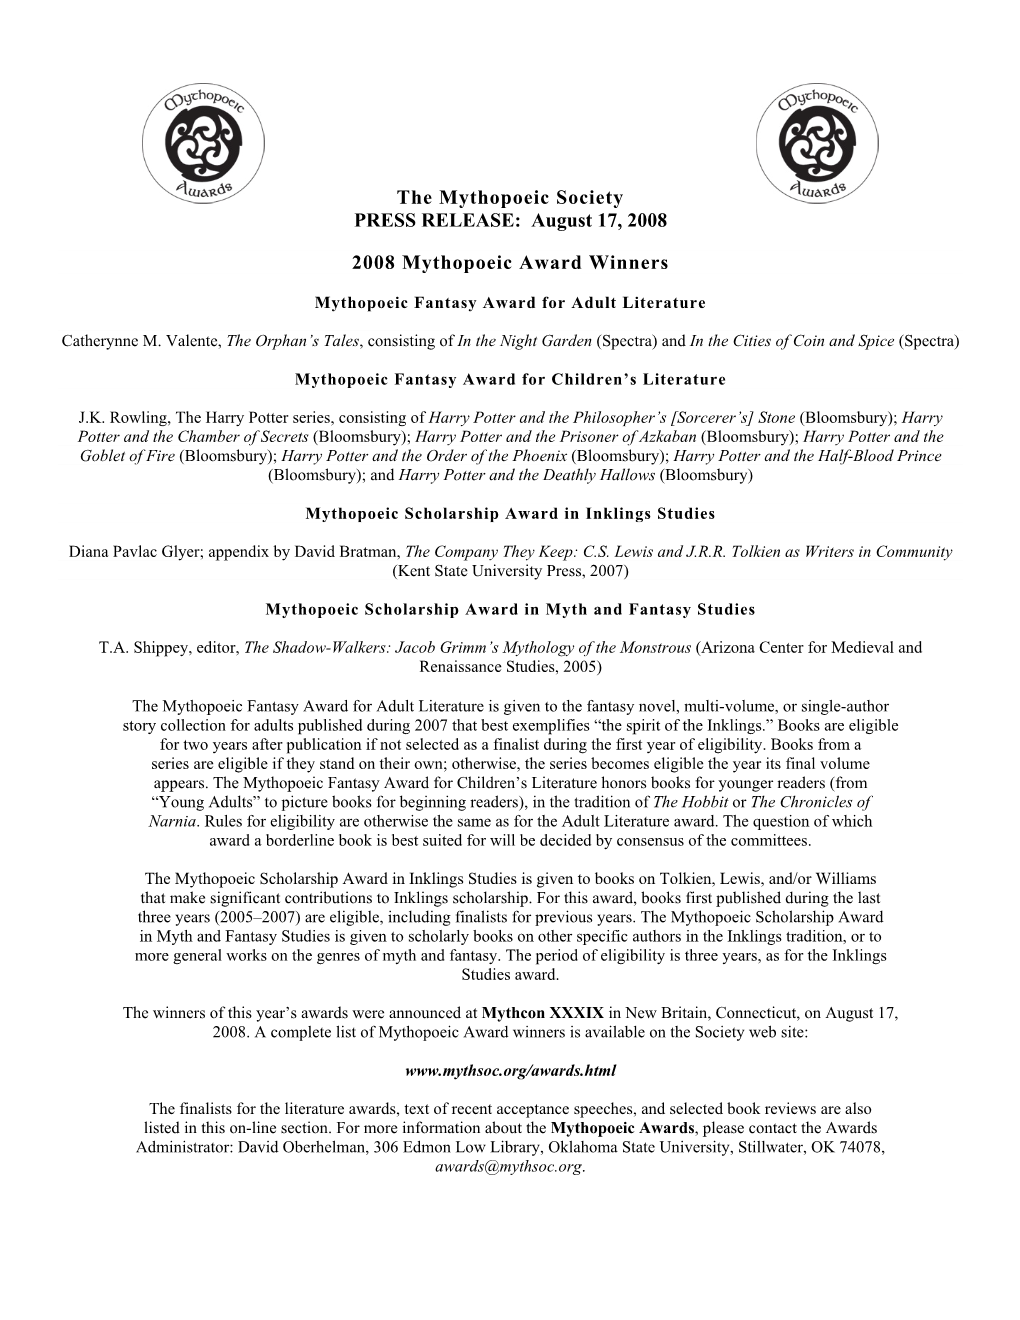 The Mythopoeic Society PRESS RELEASE: August 17, 2008 2008 Mythopoeic Award Winners